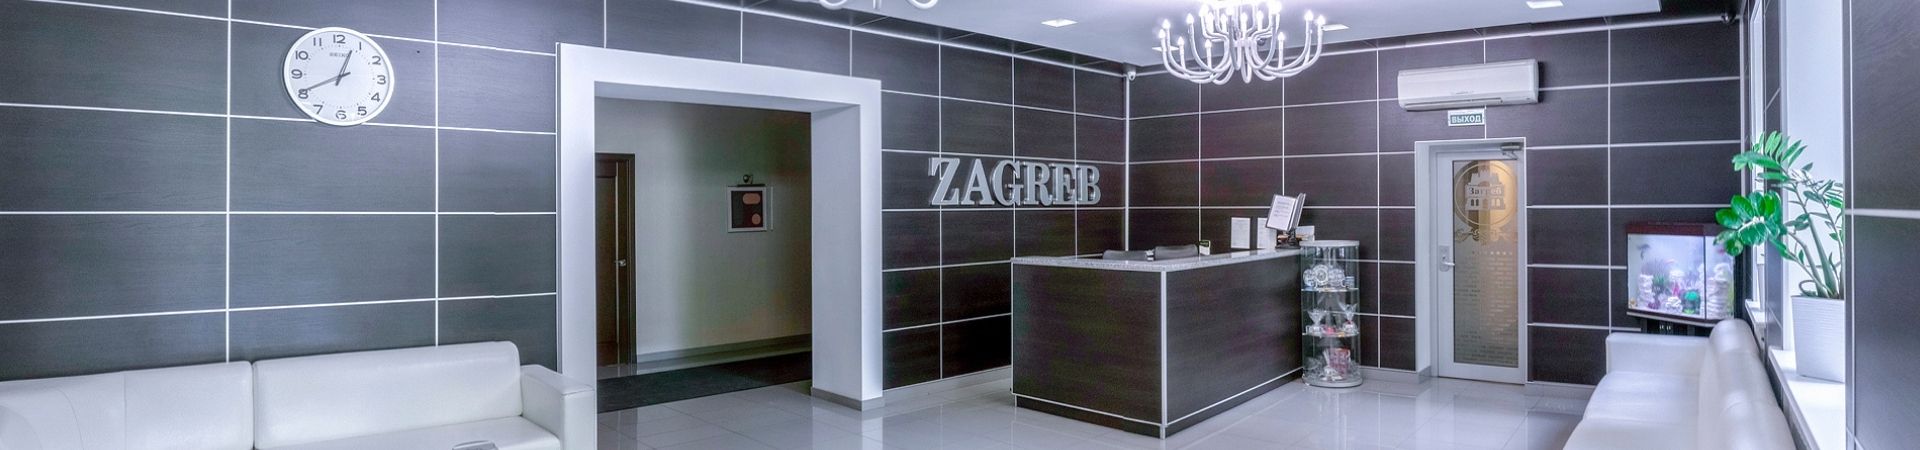 Отель Загреб - реализация проекта